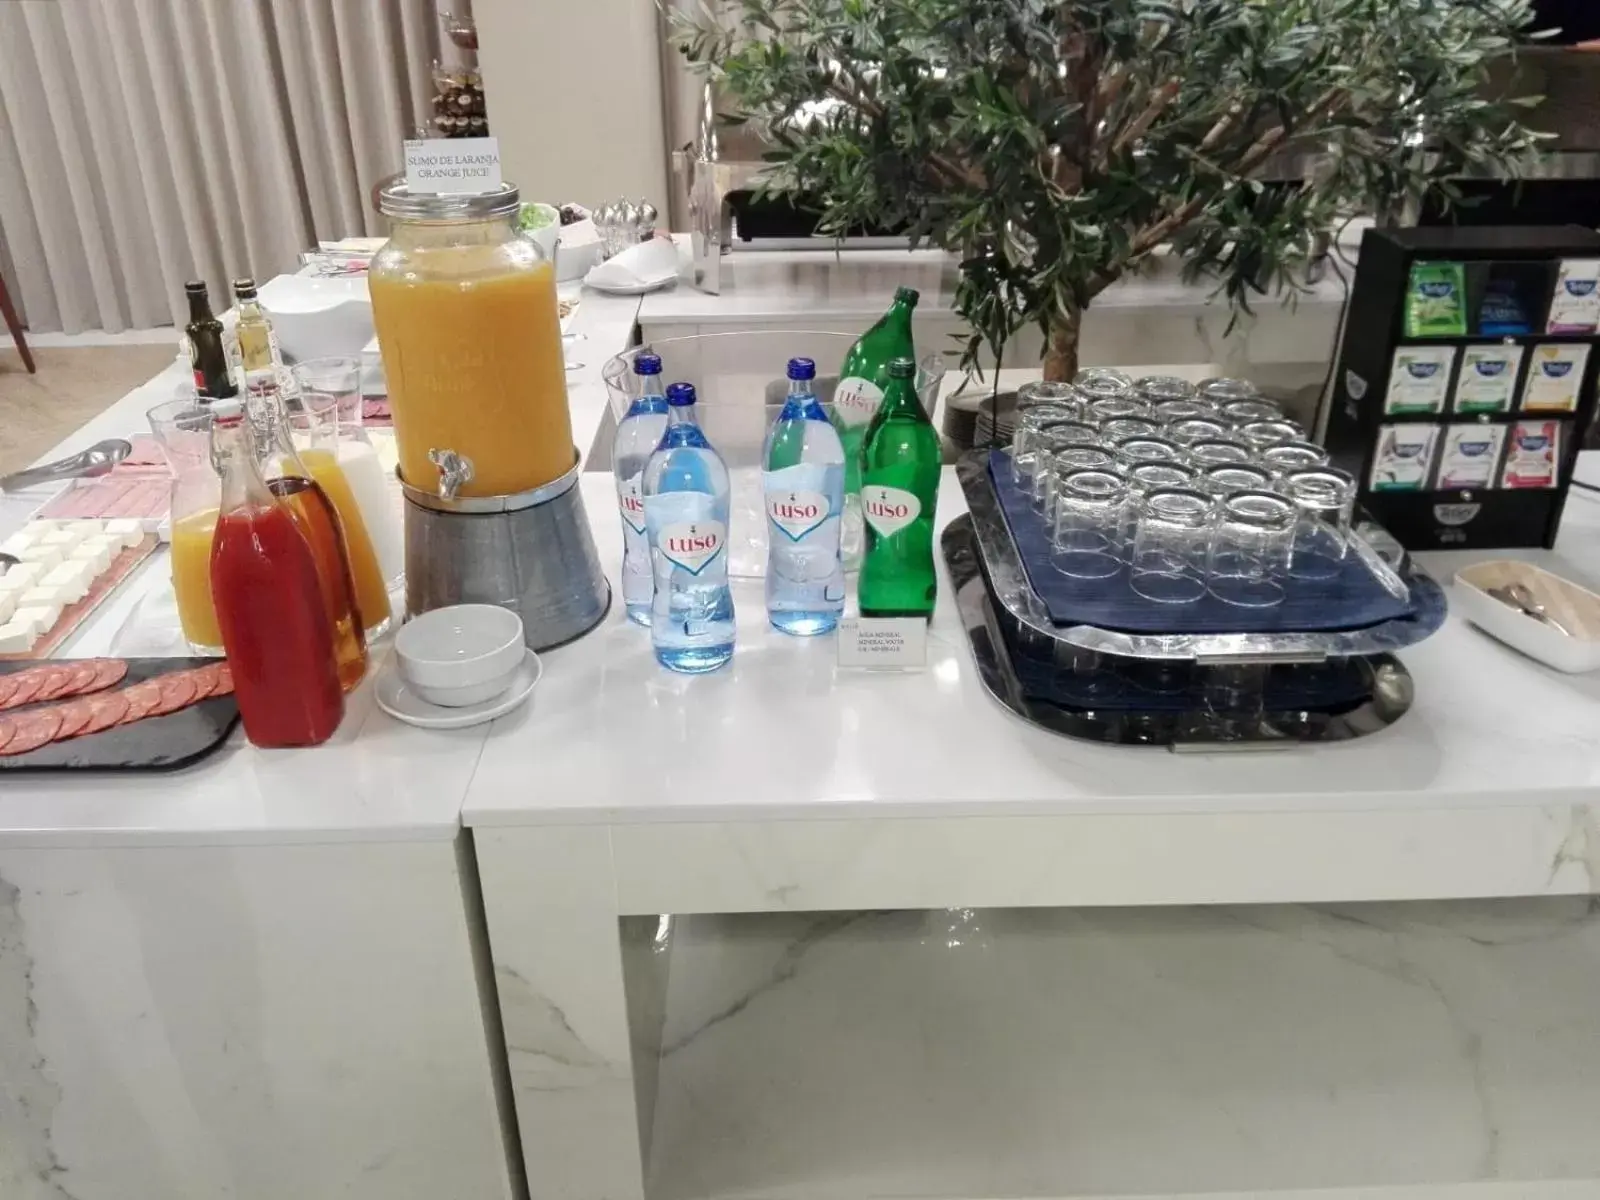 Buffet breakfast in Melia Setubal